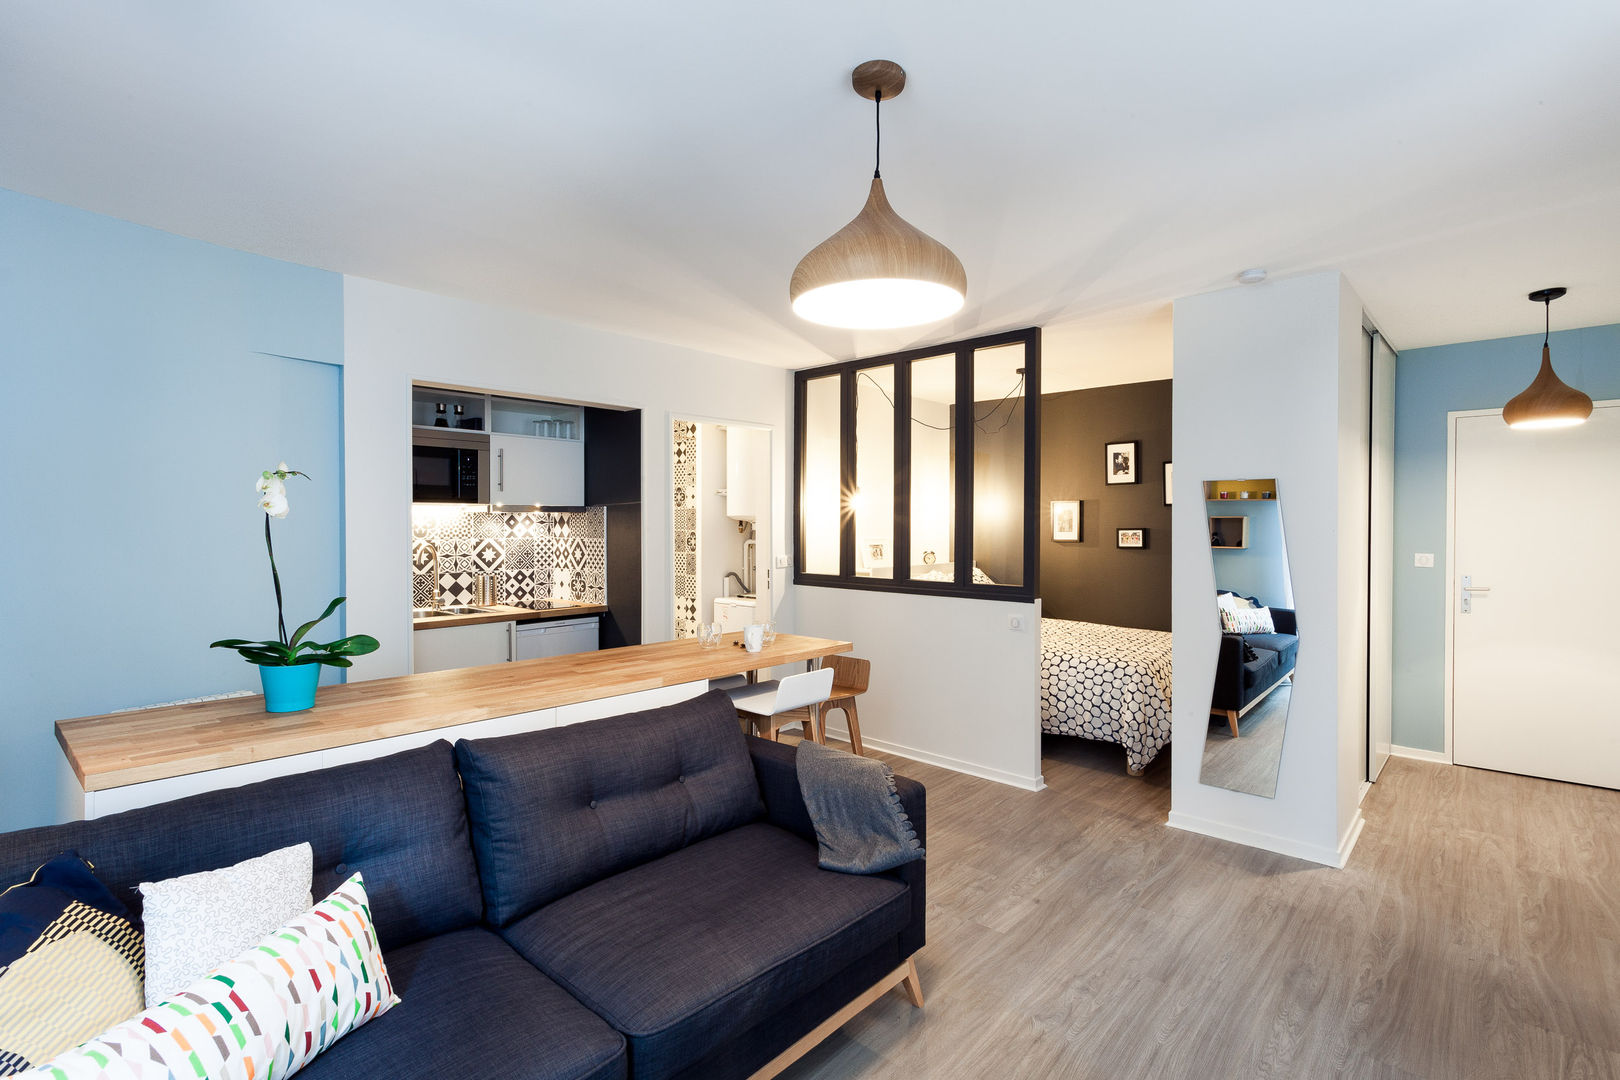 Un Appartement de 30m² Rénouvé avec un Style Scandinave, MadaM Architecture MadaM Architecture Salones escandinavos